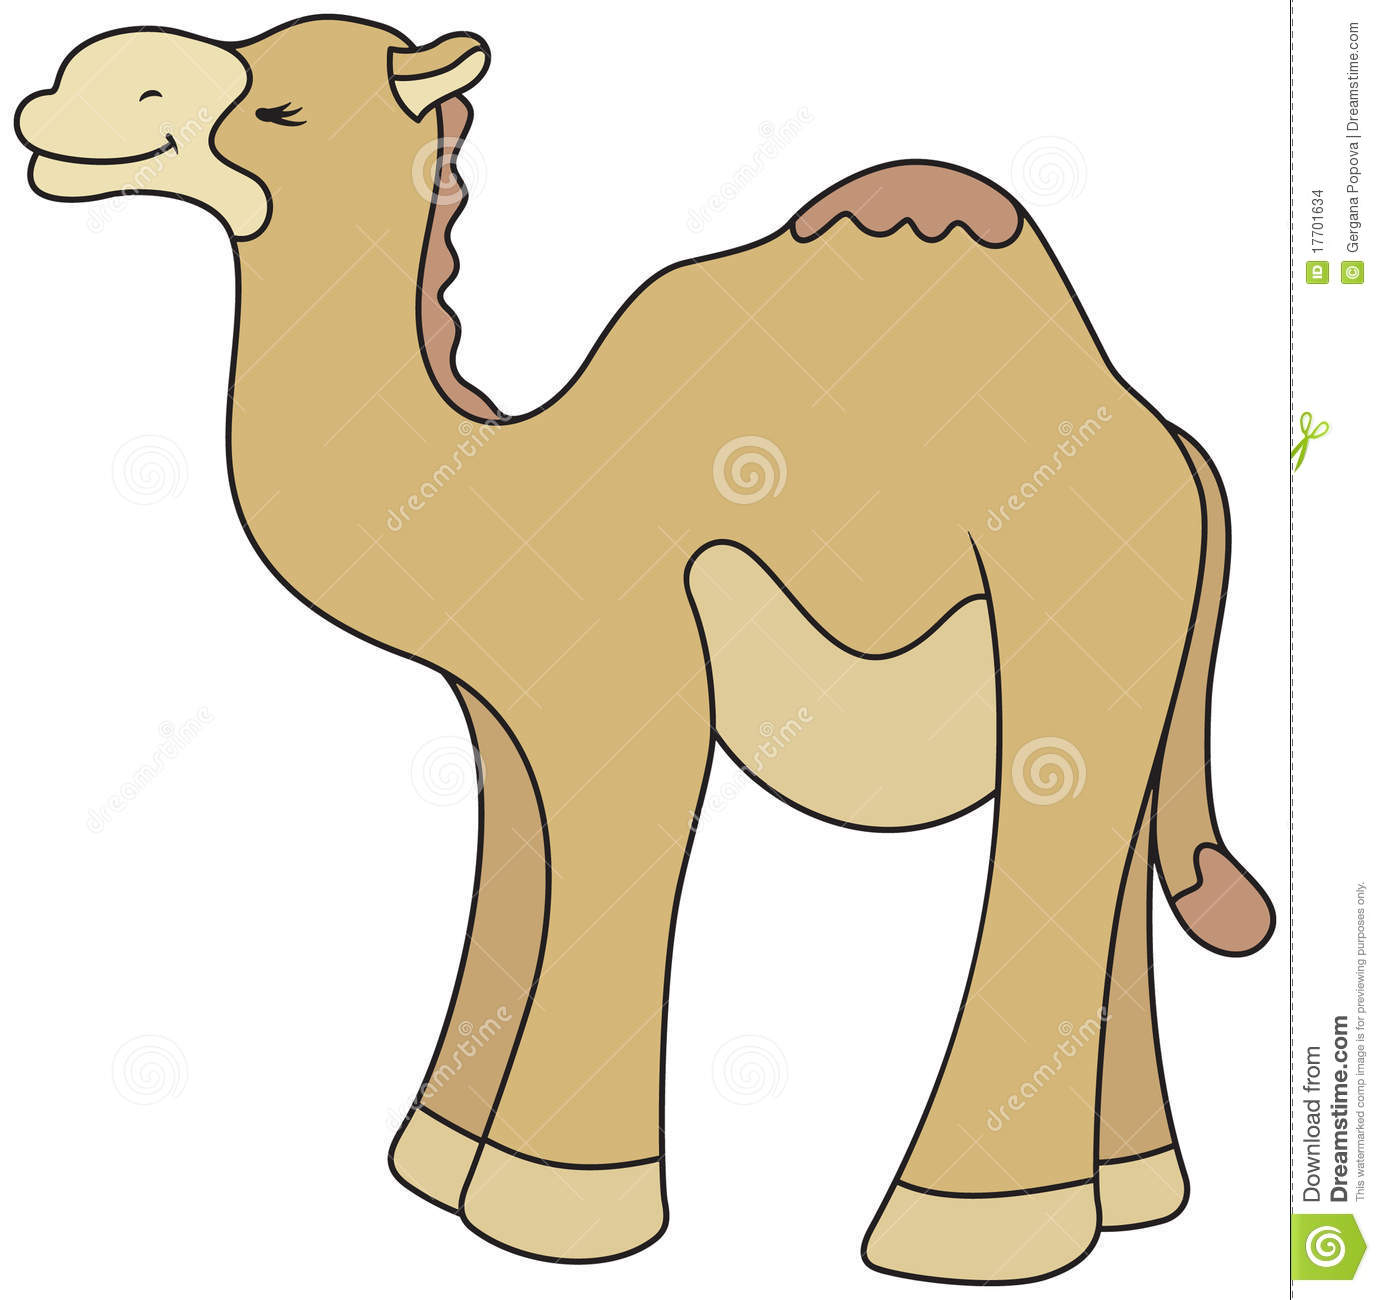 Cartoon Style Camel Illustration Stock Images   Image  17701634